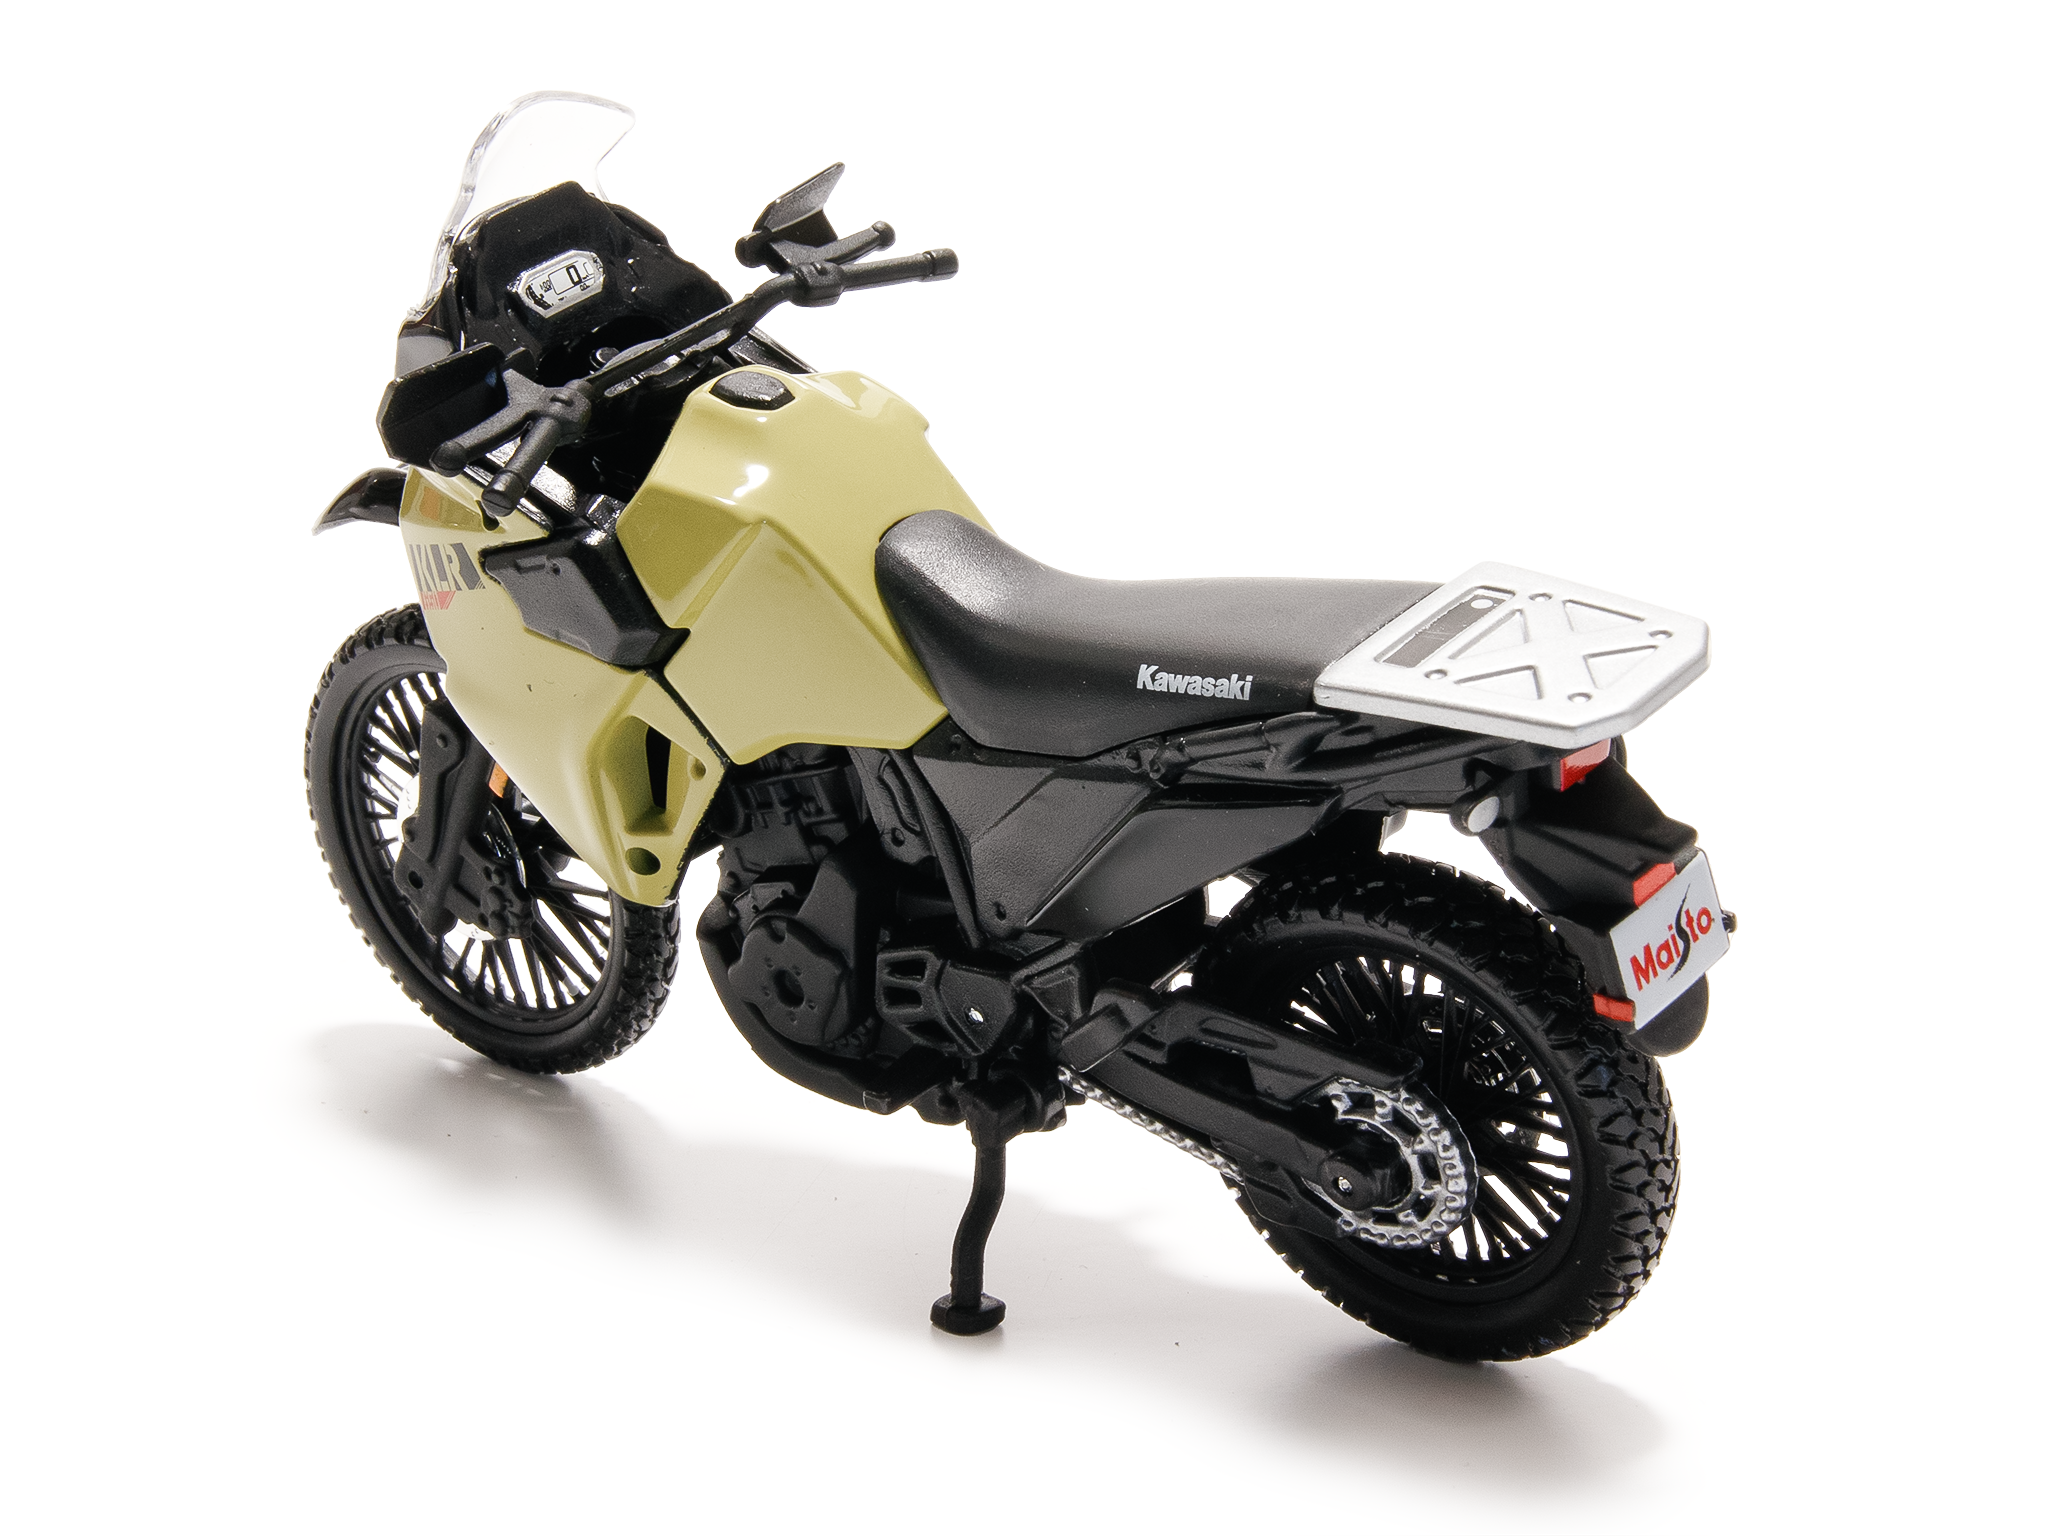 Kawasaki KLR 650 2021 brown - 1:18 Scale Diecast Model Motorcycle